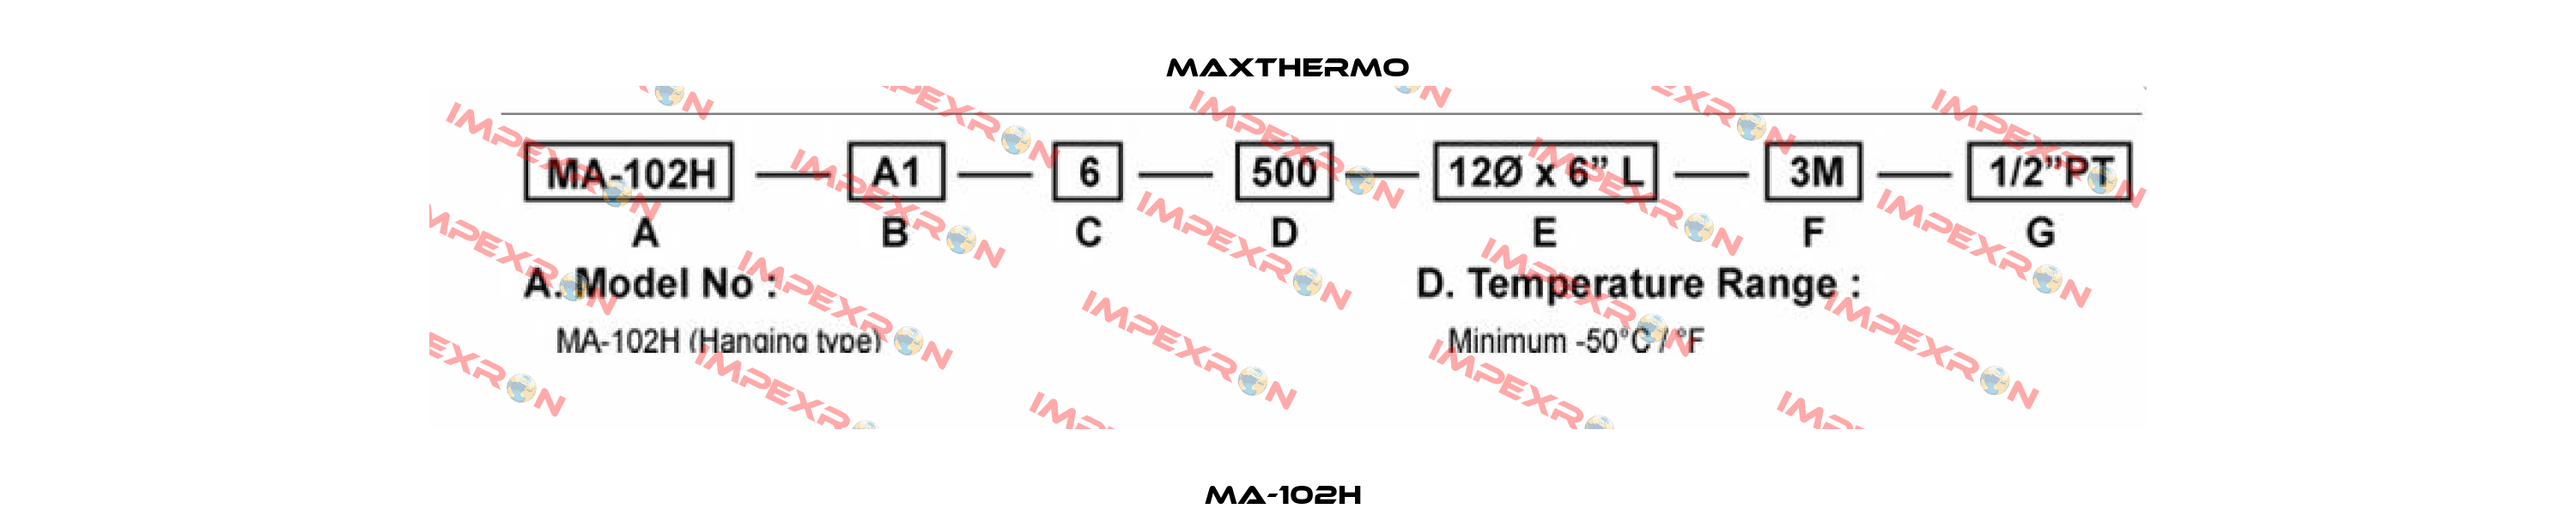 MA-102H  Maxthermo